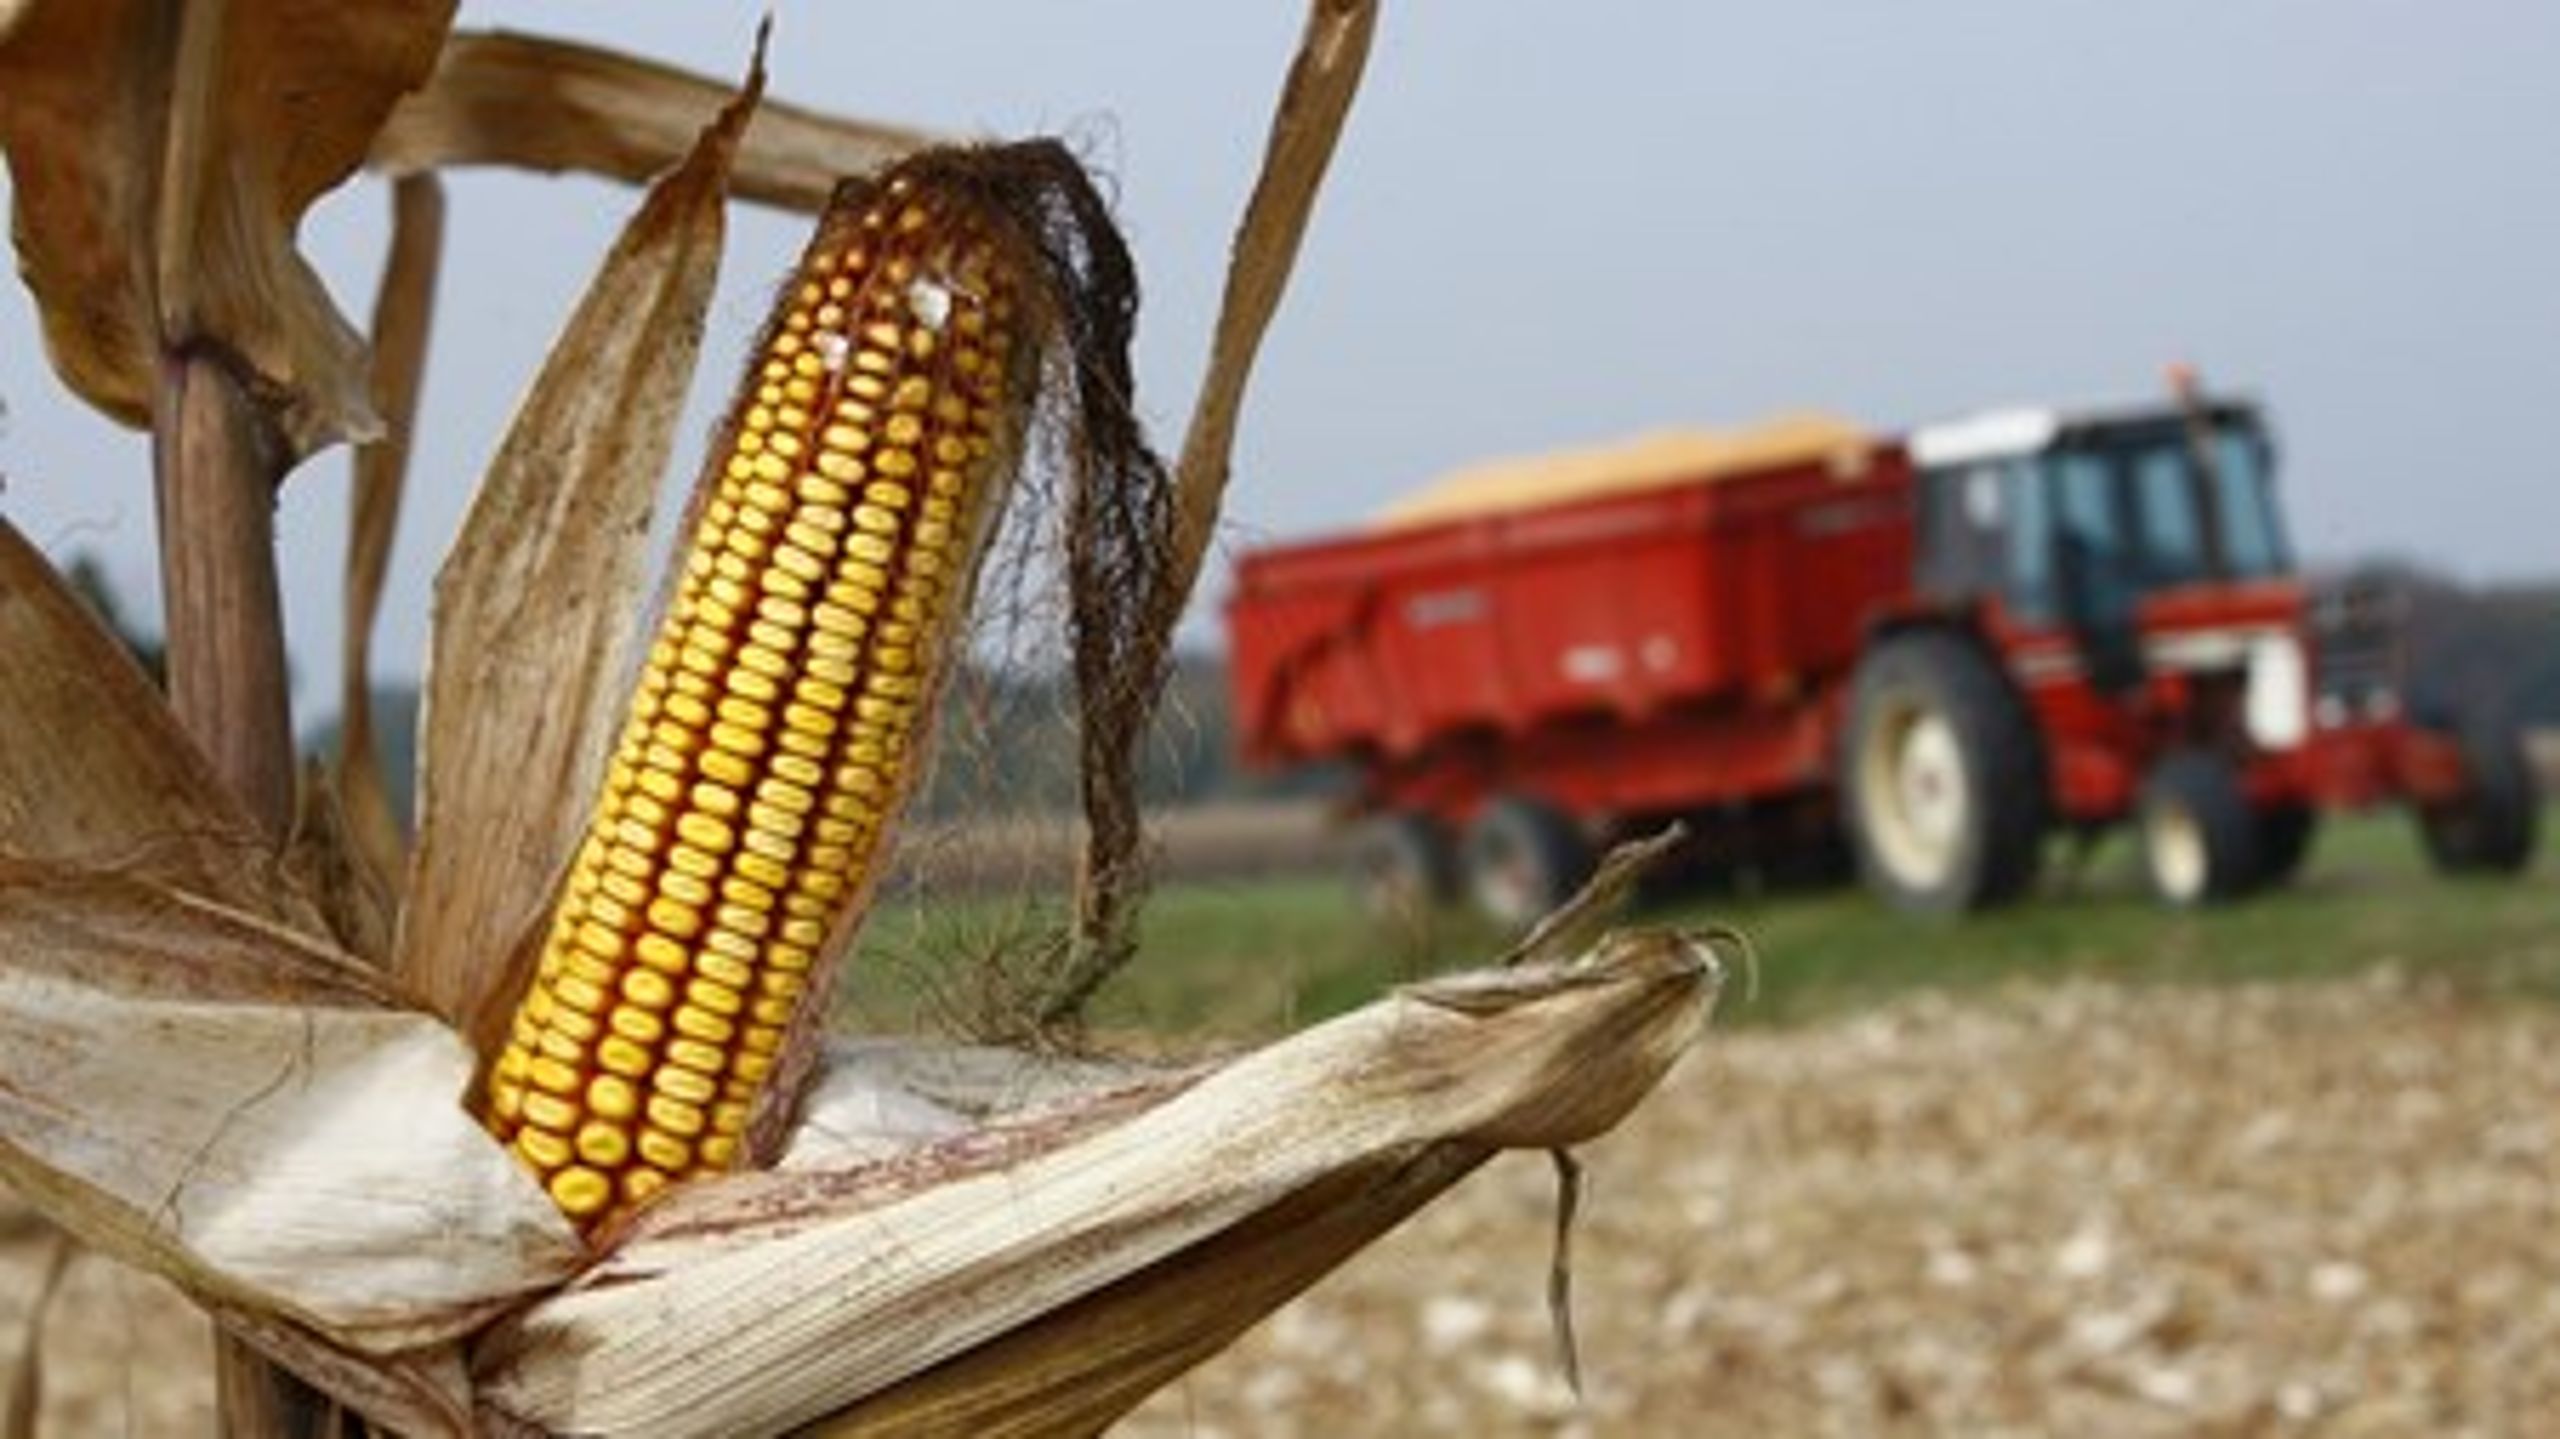 Majs er lige nu den eneste GMO-afgrøde, som dyrkes i flere EU-lande. Nye regler, der giver landene lov til at forbyde GMO'er, kan måske åbne op for flere godkendelser på EU-plan.